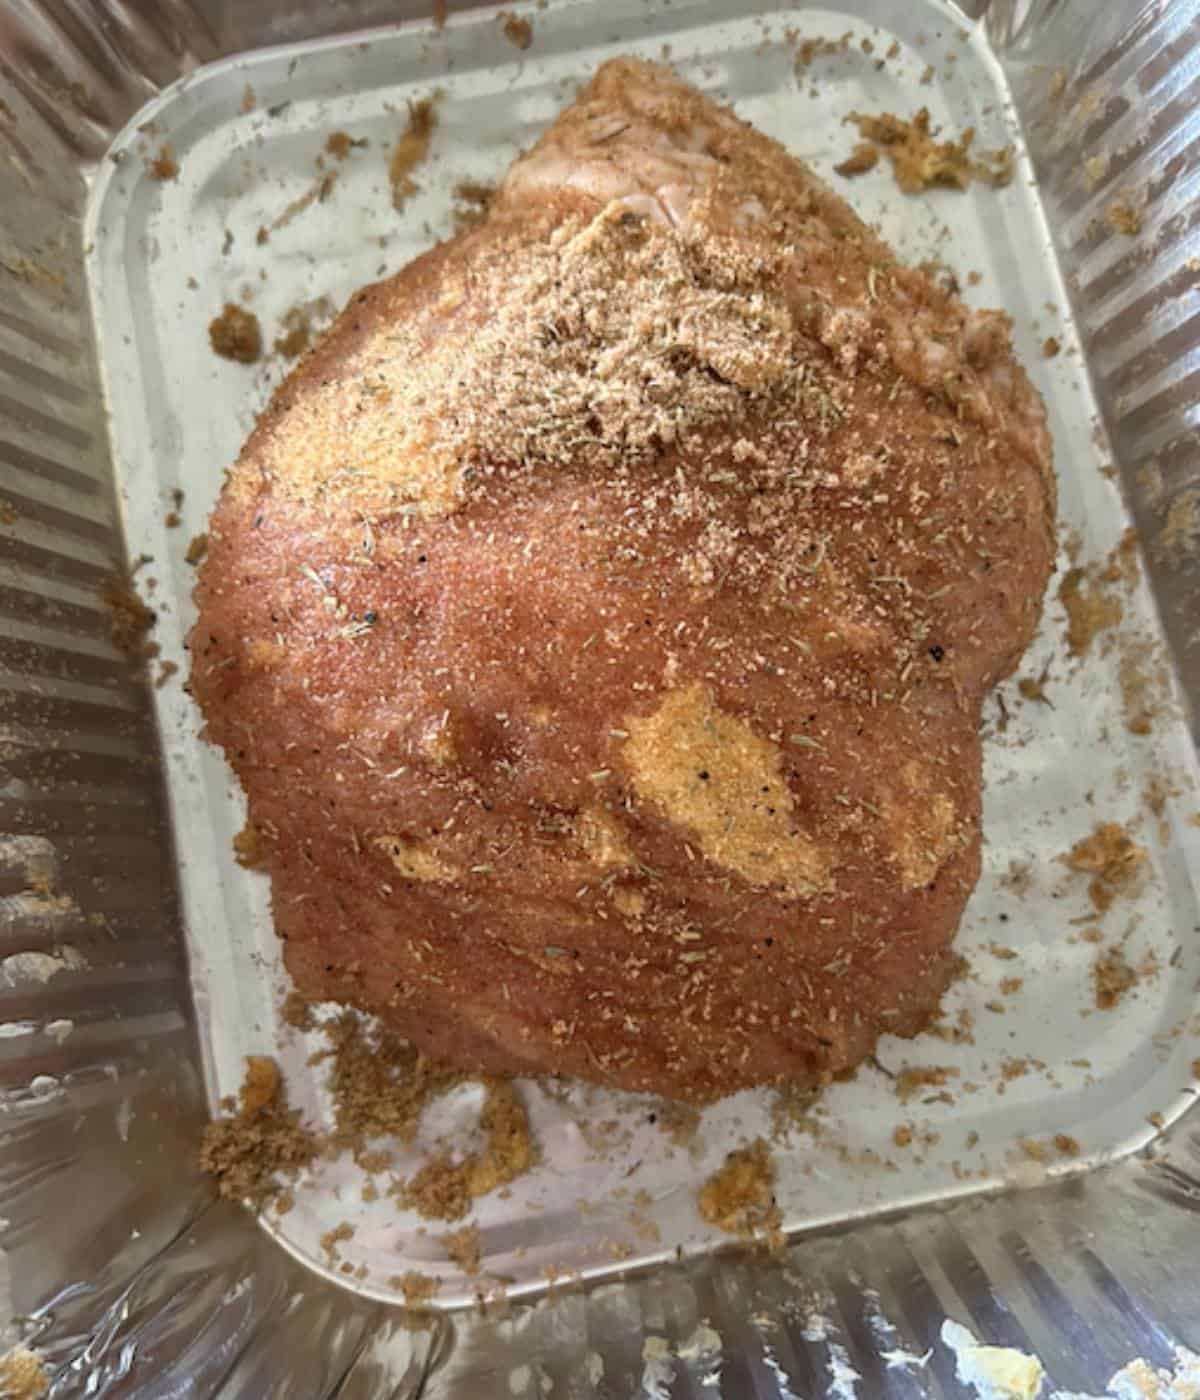 Turkey breast with brown sugar rub.